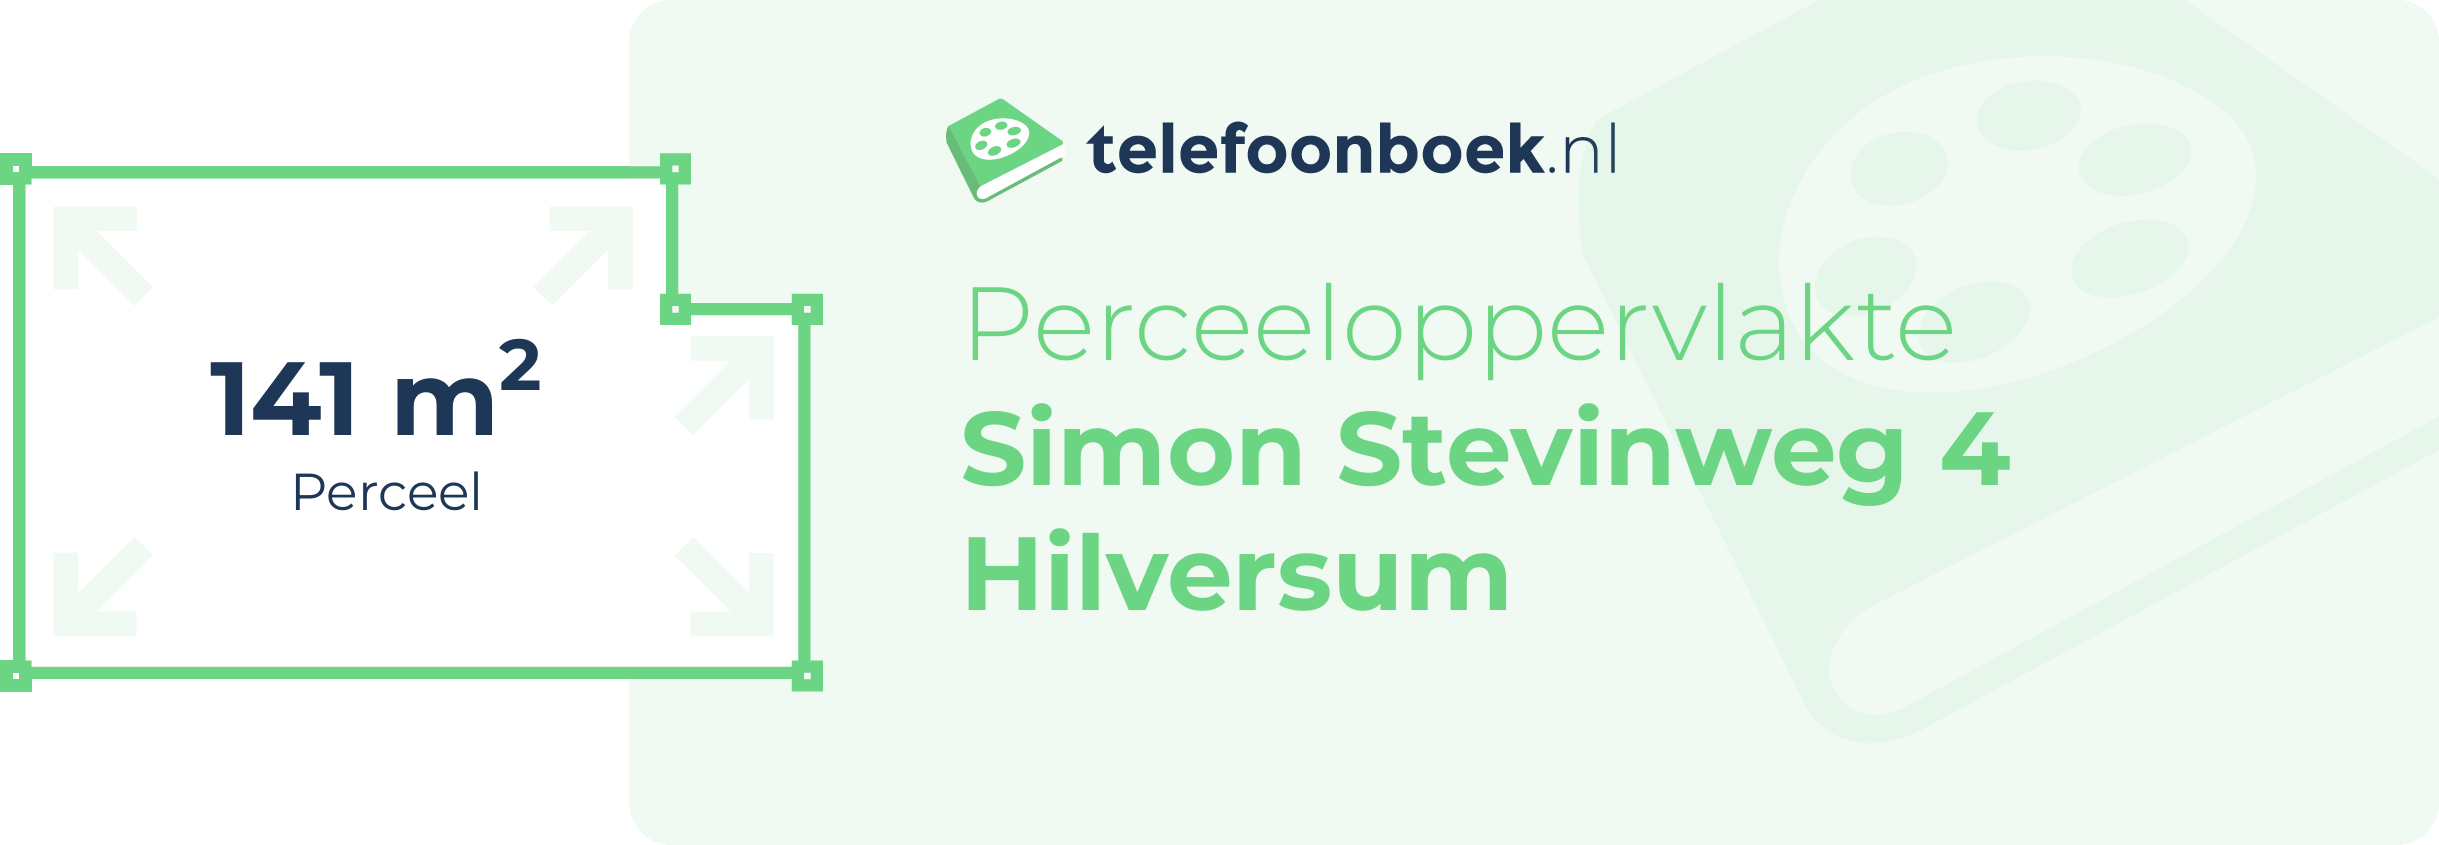 Perceeloppervlakte Simon Stevinweg 4 Hilversum